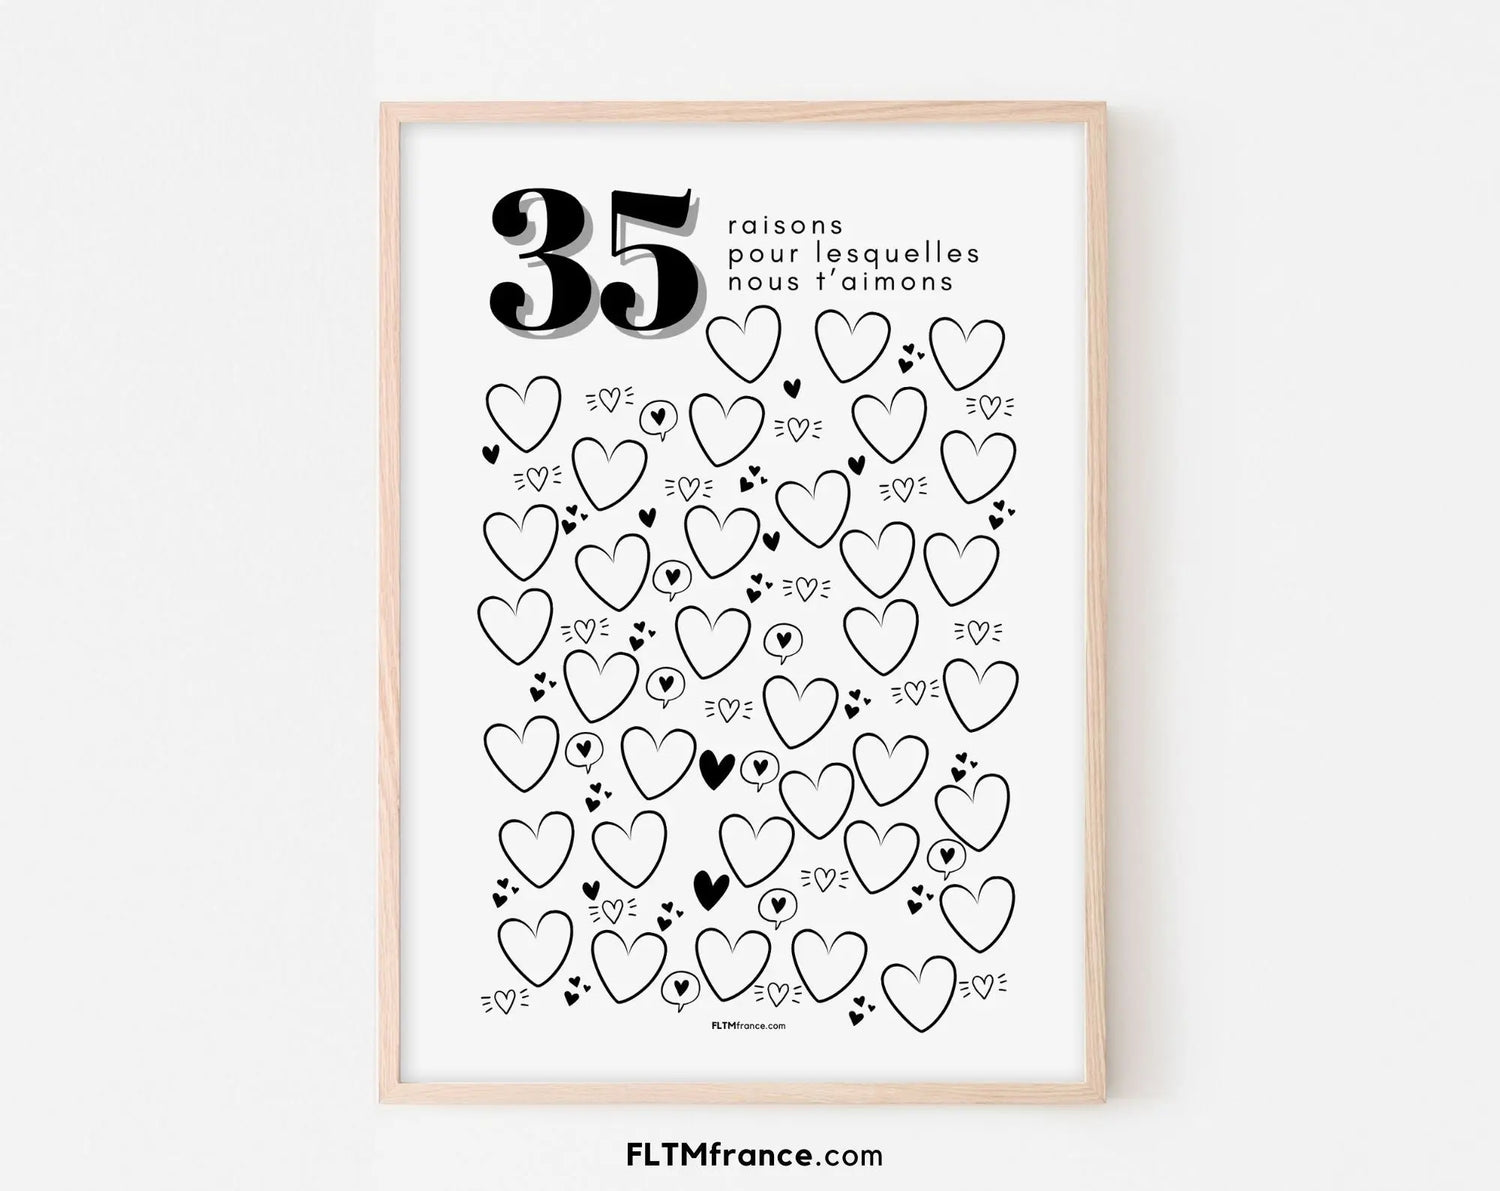 Affiche 35 raisons pour lesquelles nous t’aimons - Livre d'or 35 ans FLTMfrance